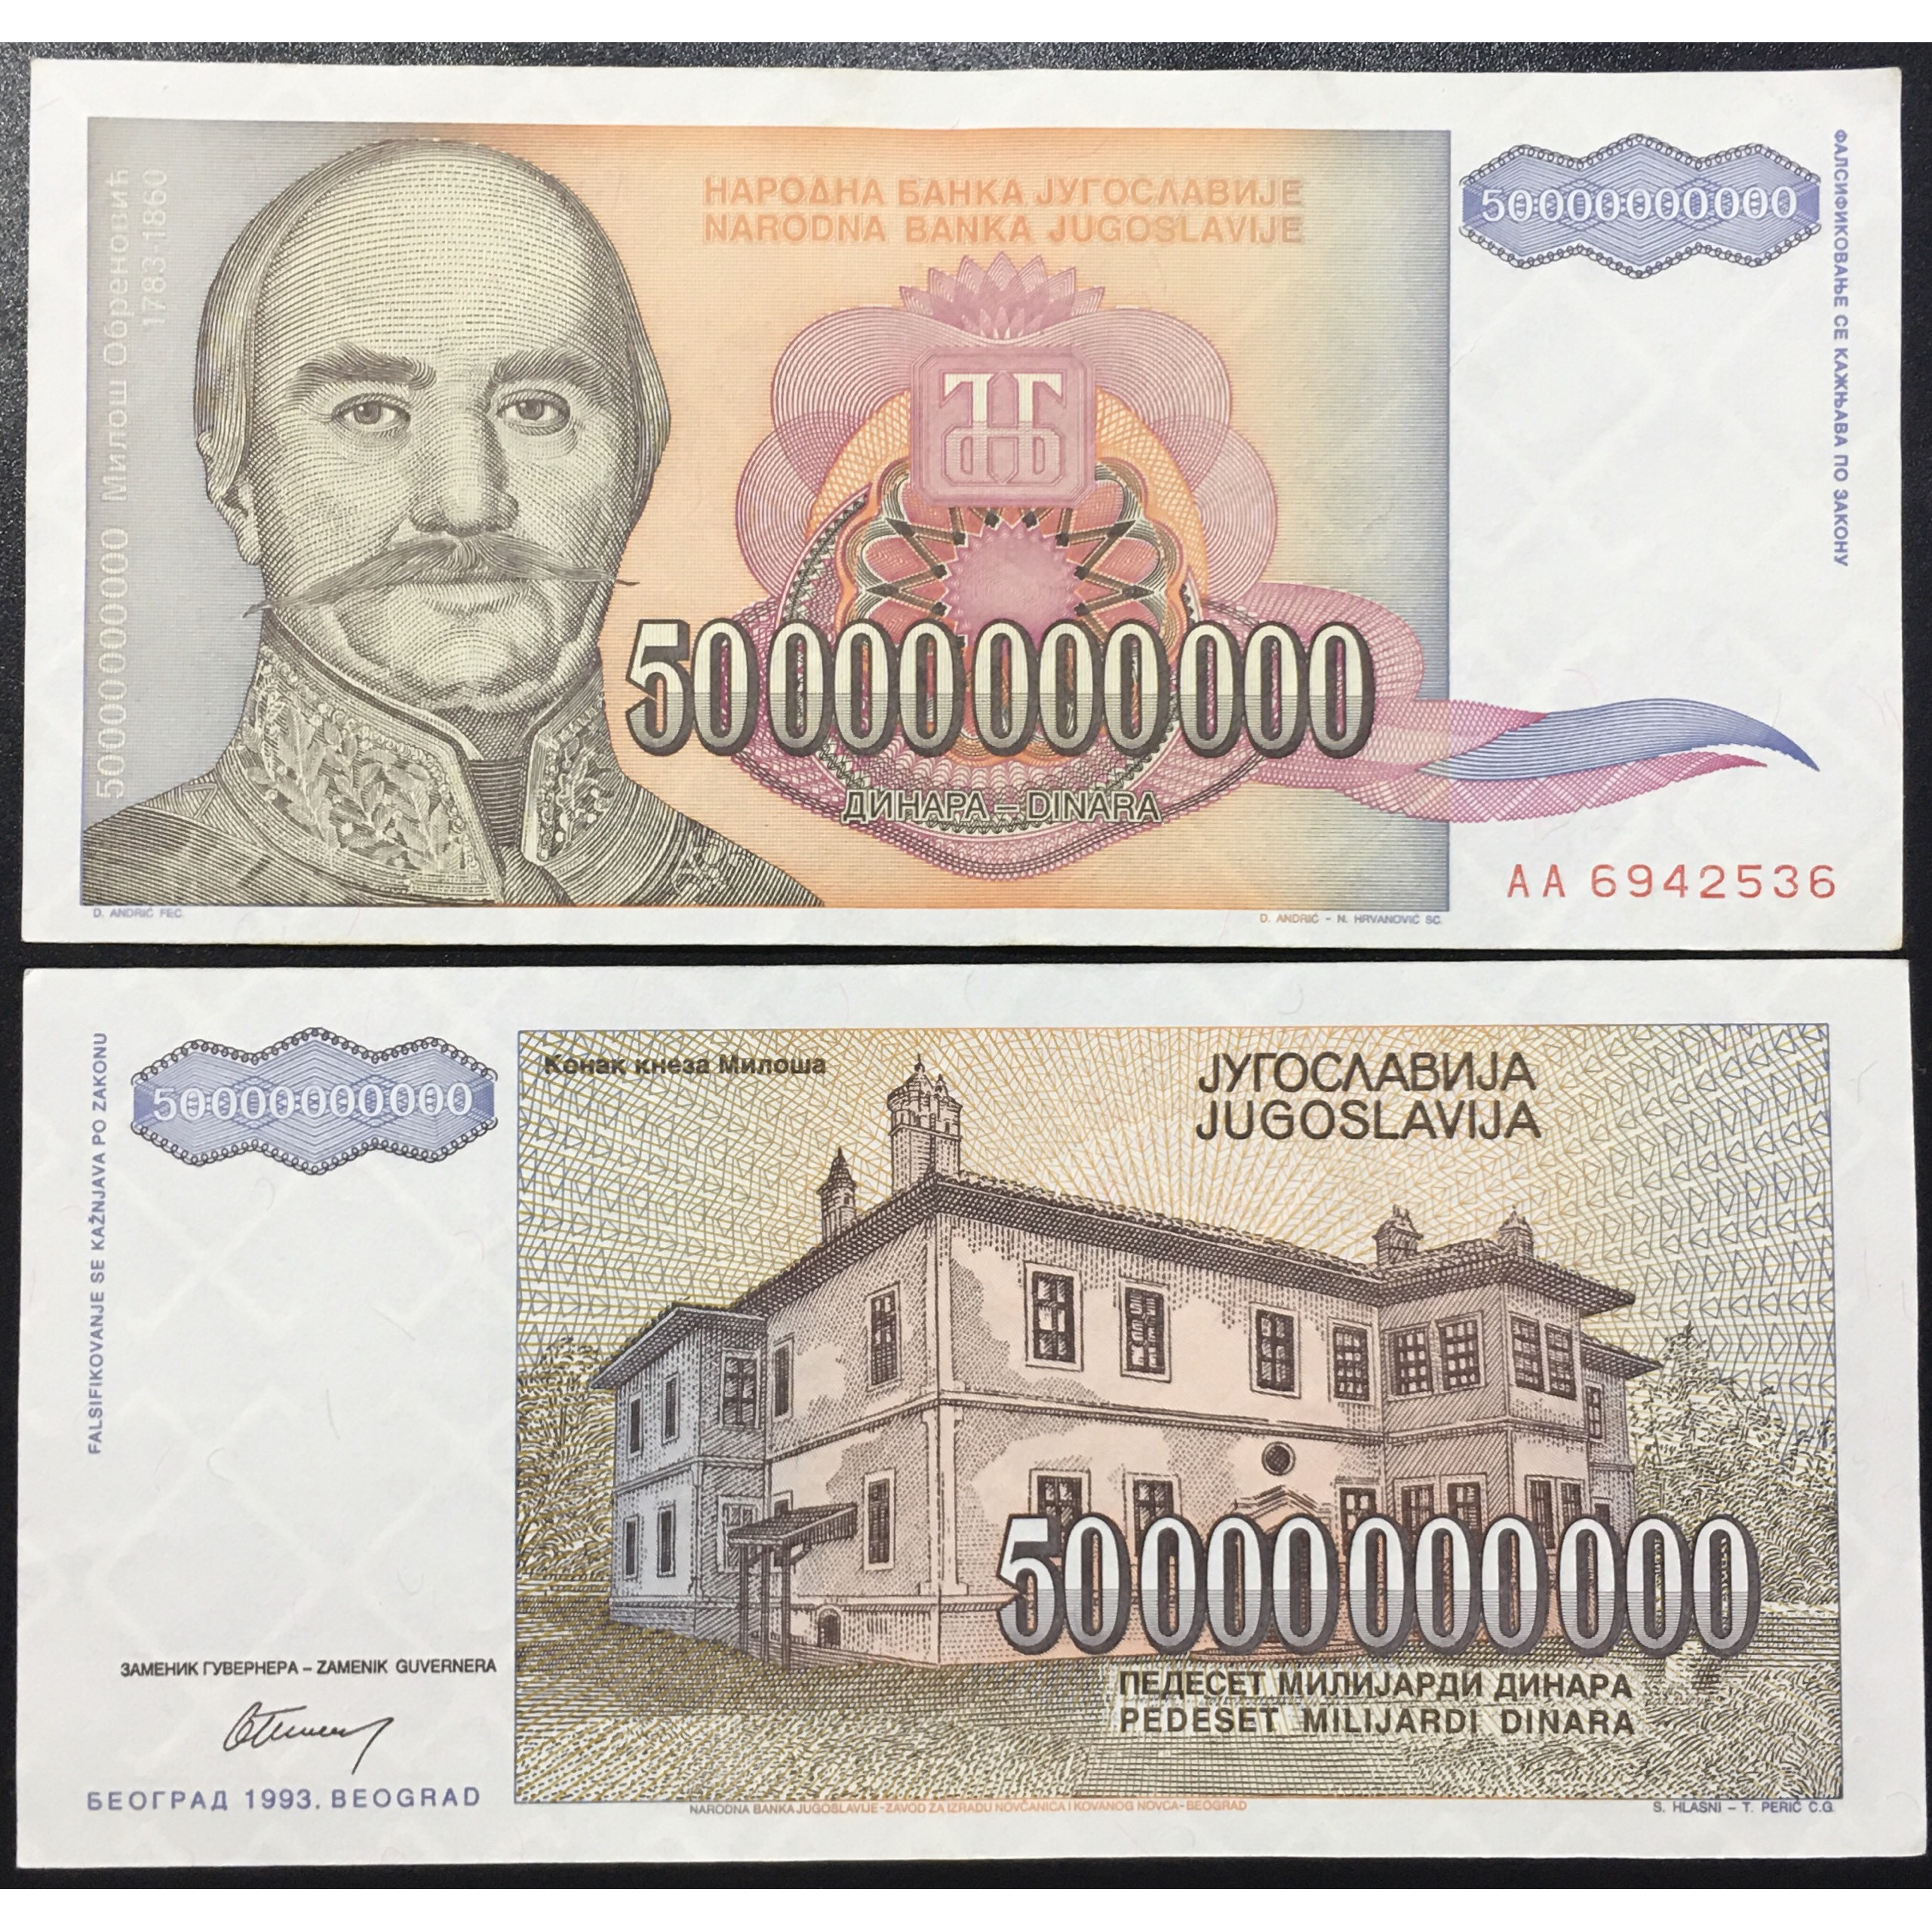 Tờ 50 Tỷ Dinara của Nam Tư siêu khủng thời kỳ lạm phát 1997, sưu tầm tiền mệnh giá khủng